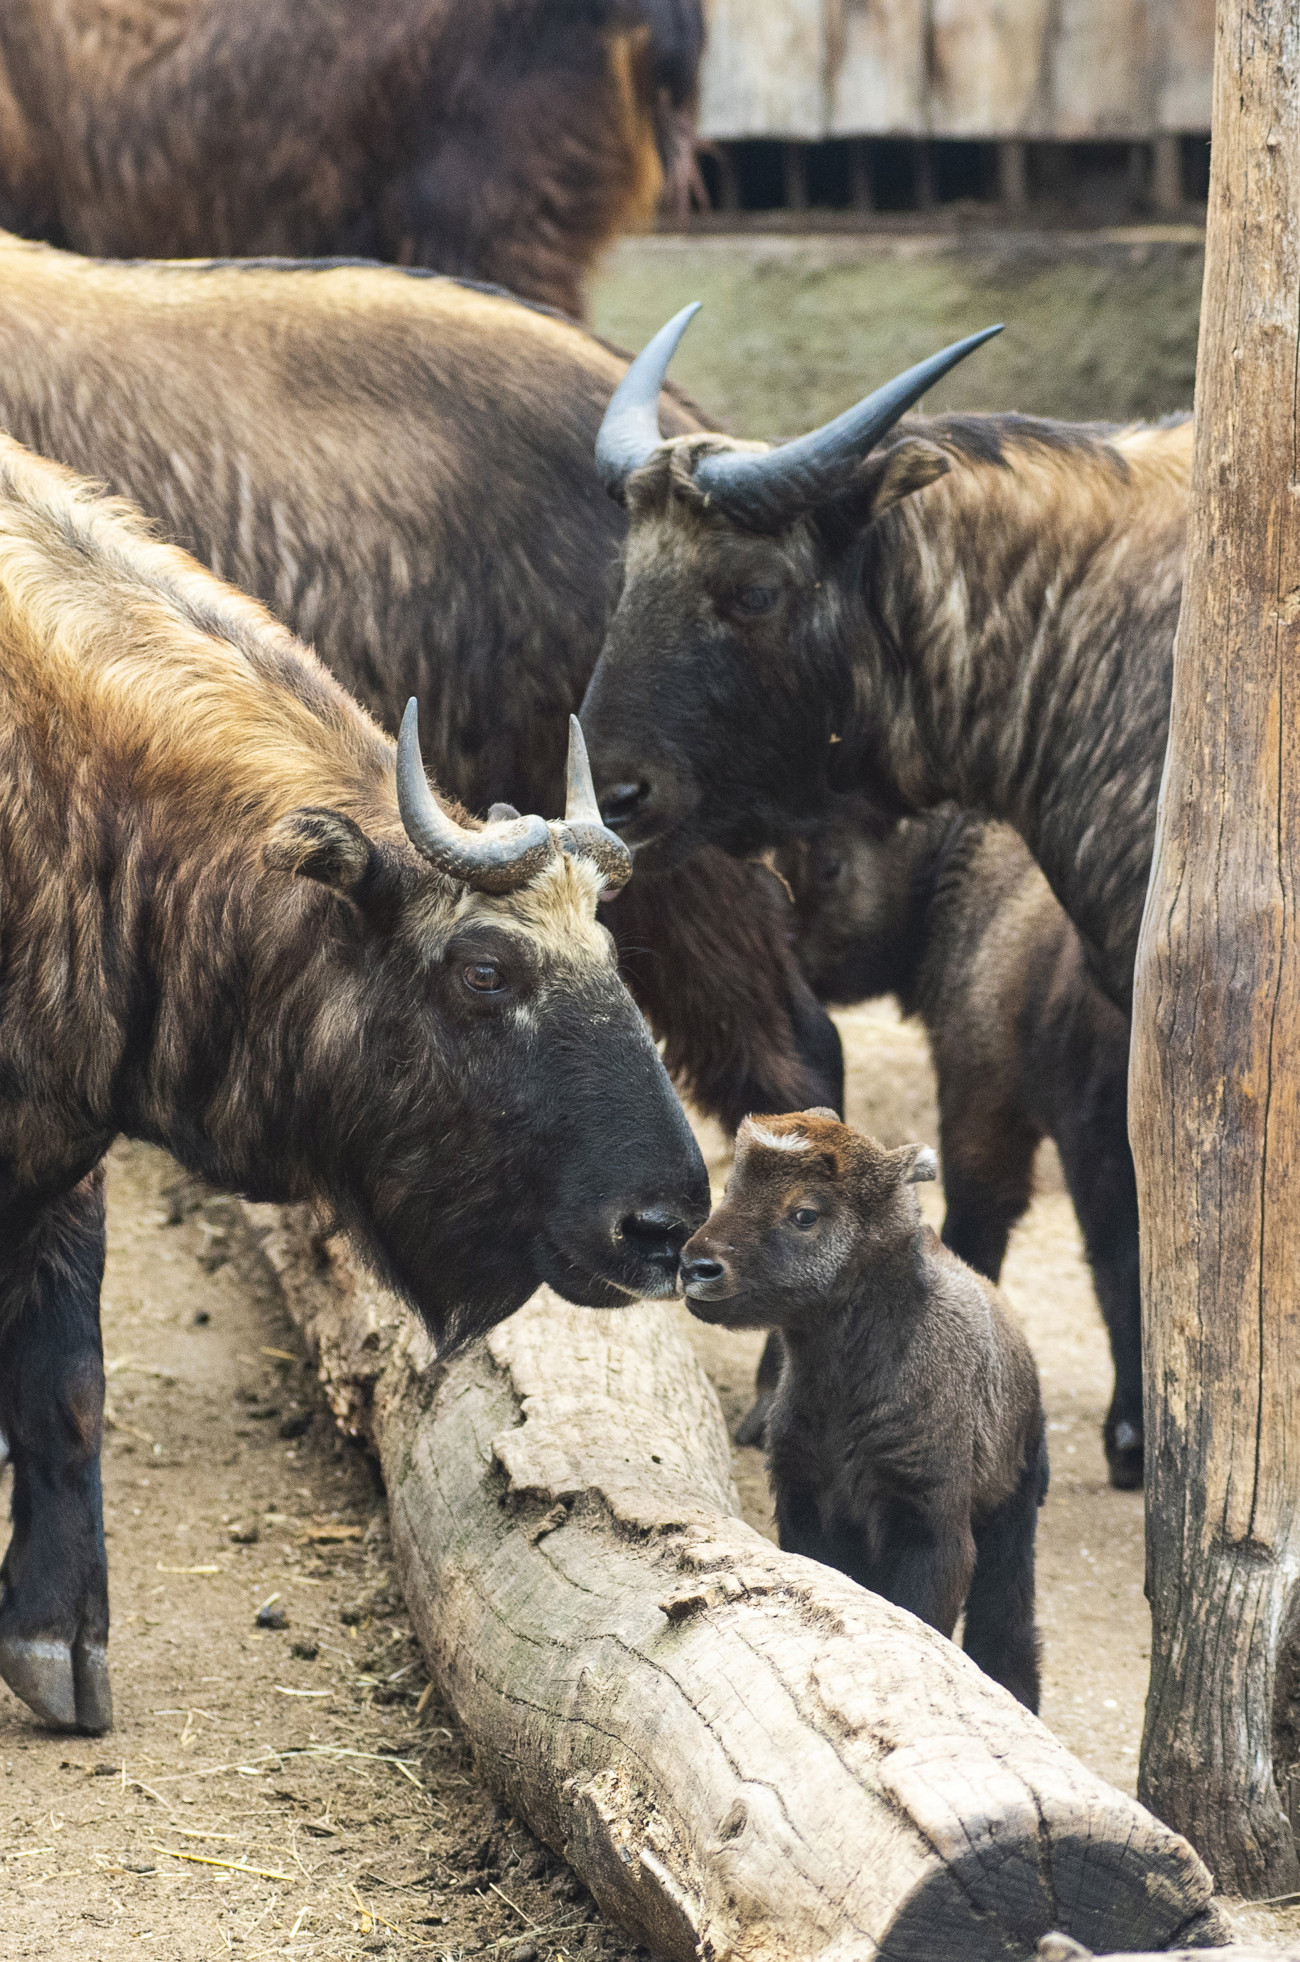 Nyíregyháza, 2019. március 7.
Kétnapos mishmi takin (Budorcas taxicolor) a Nyíregyházi Állatparkban 2019. március 7-én. A rendszertanilag a kecskefélékhez tartozó, megjelenésében inkább kis termetű szarvasmarhára emlékeztető takint 2009 óta tartja az állatpark. Az eddig egy ivarérett hímből, két ivarérett nőstényből és két borjúból álló csordában - két hónap eltéréssel - két utód is született.
MTI/Balázs Attila